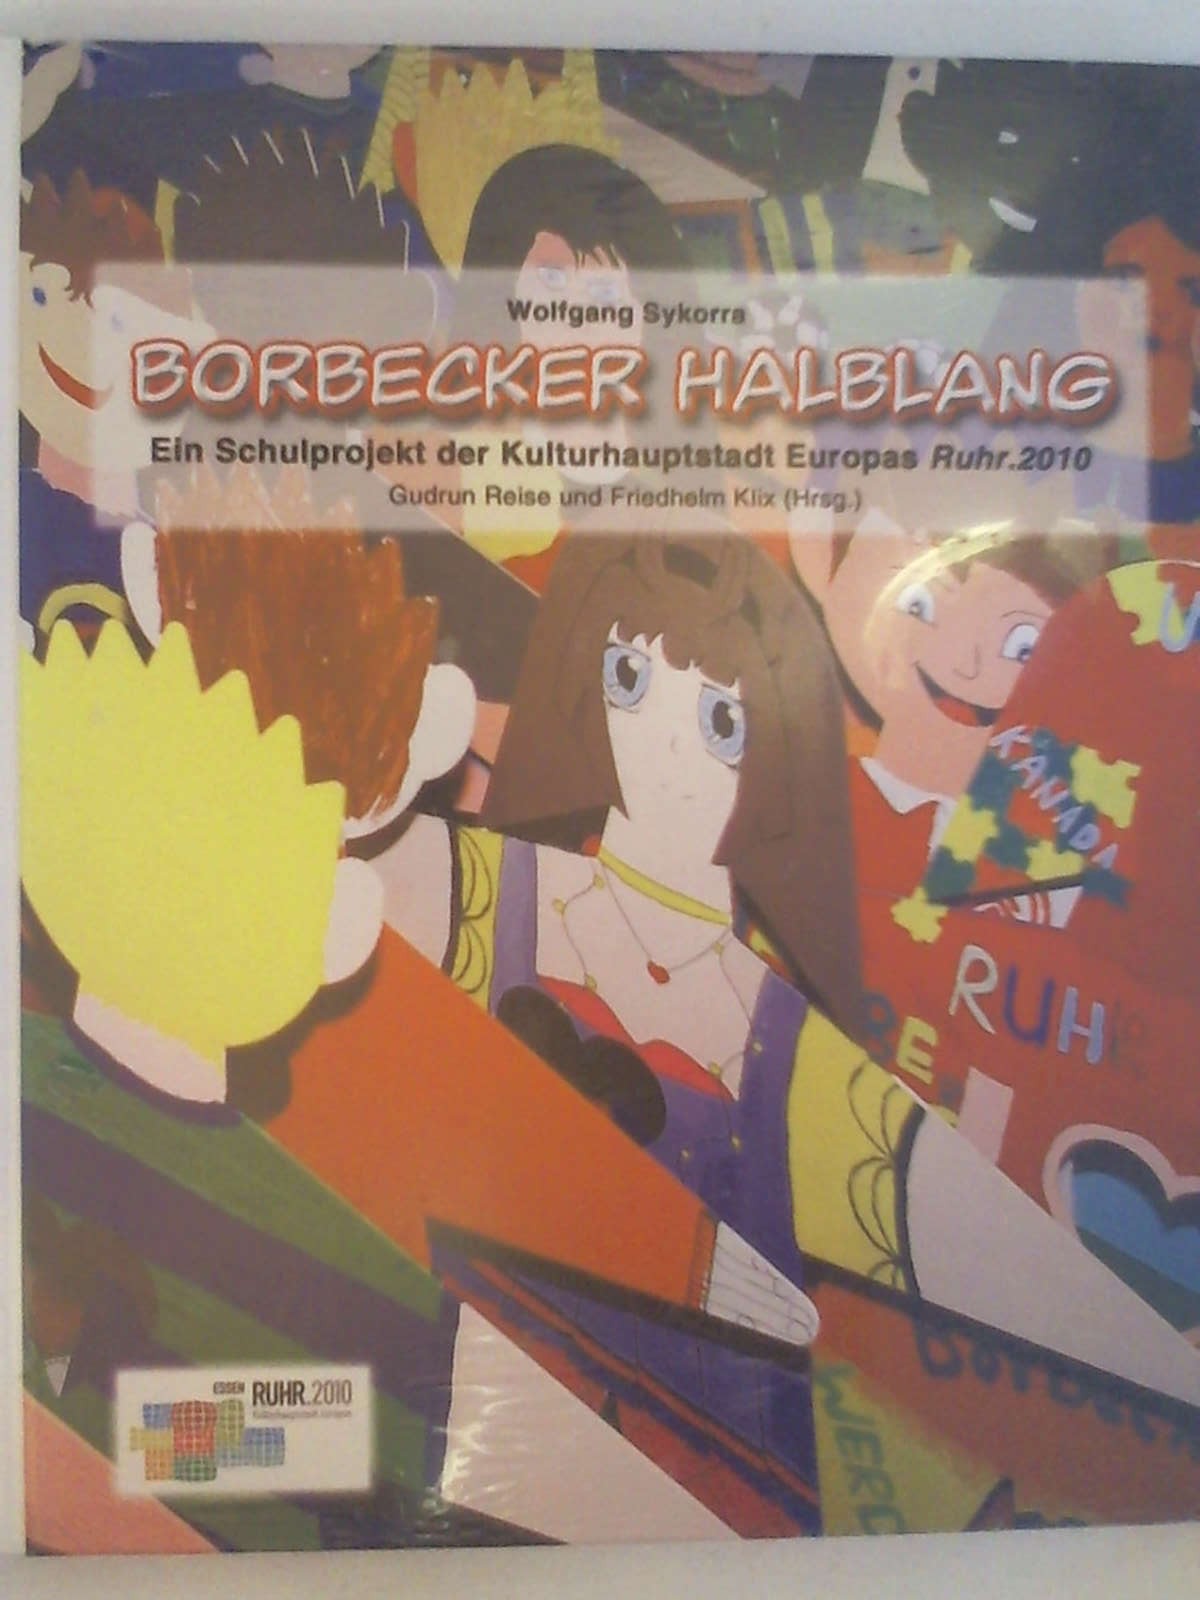 Borbecker Halblang: Ein Schulprojekt der Kulturhauptstadt Europas Ruhr. 2010. - Wolfgang Sykorra